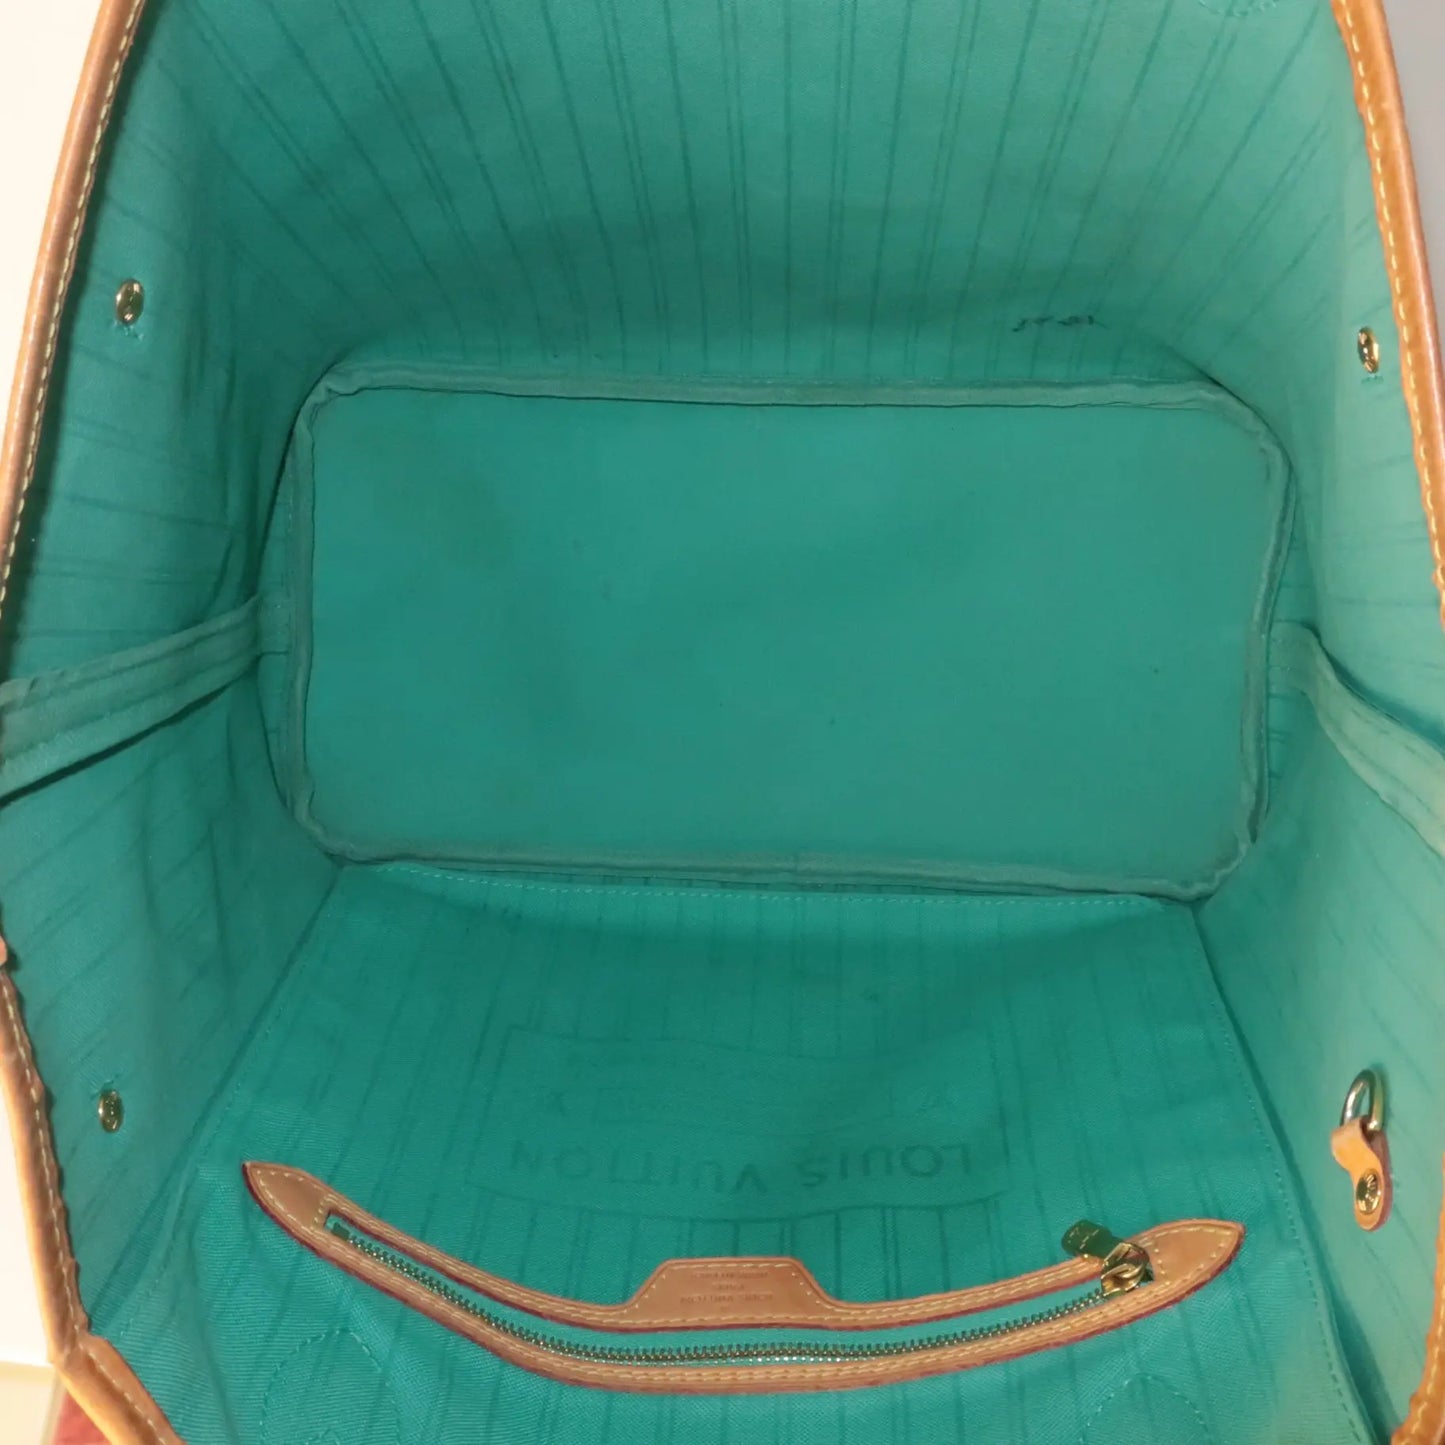 louis vuitton neverfull mm monogram v turquoise m41601 handbag